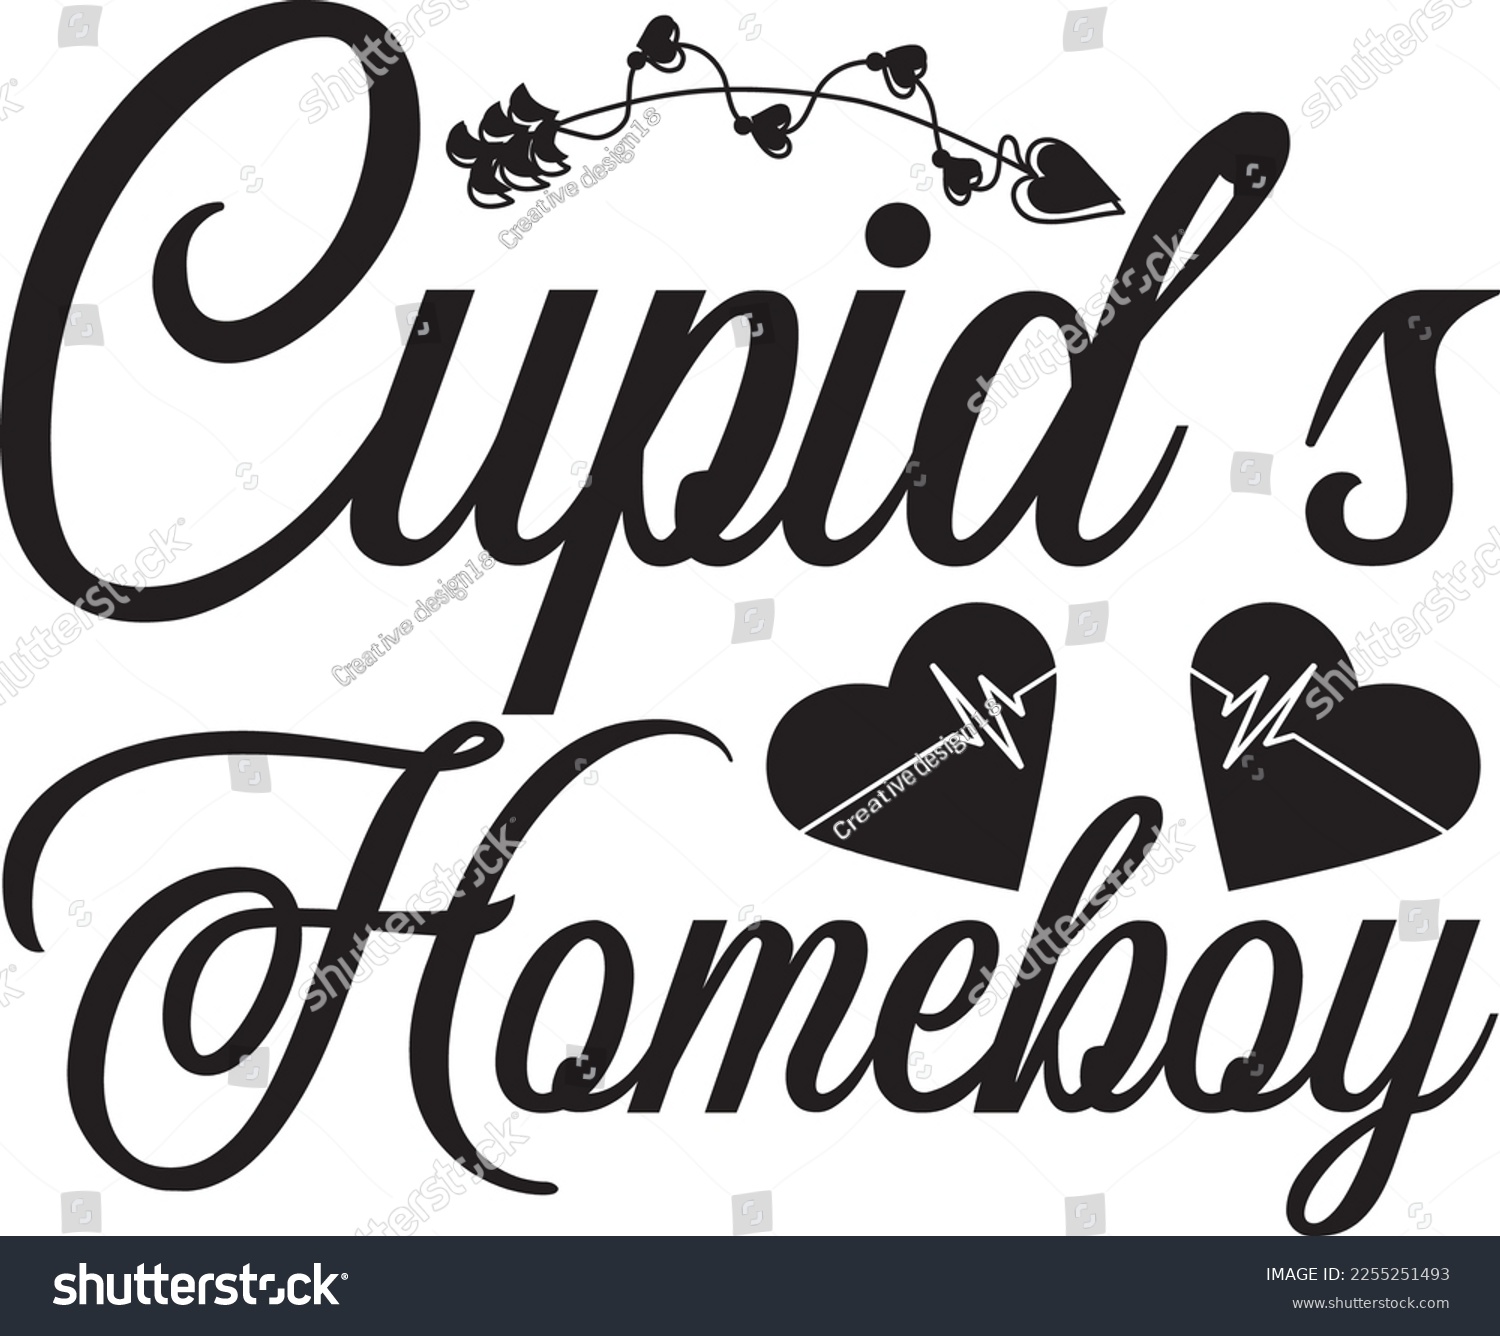 SVG of Cupids Homeboy SVG design, t shirt design svg